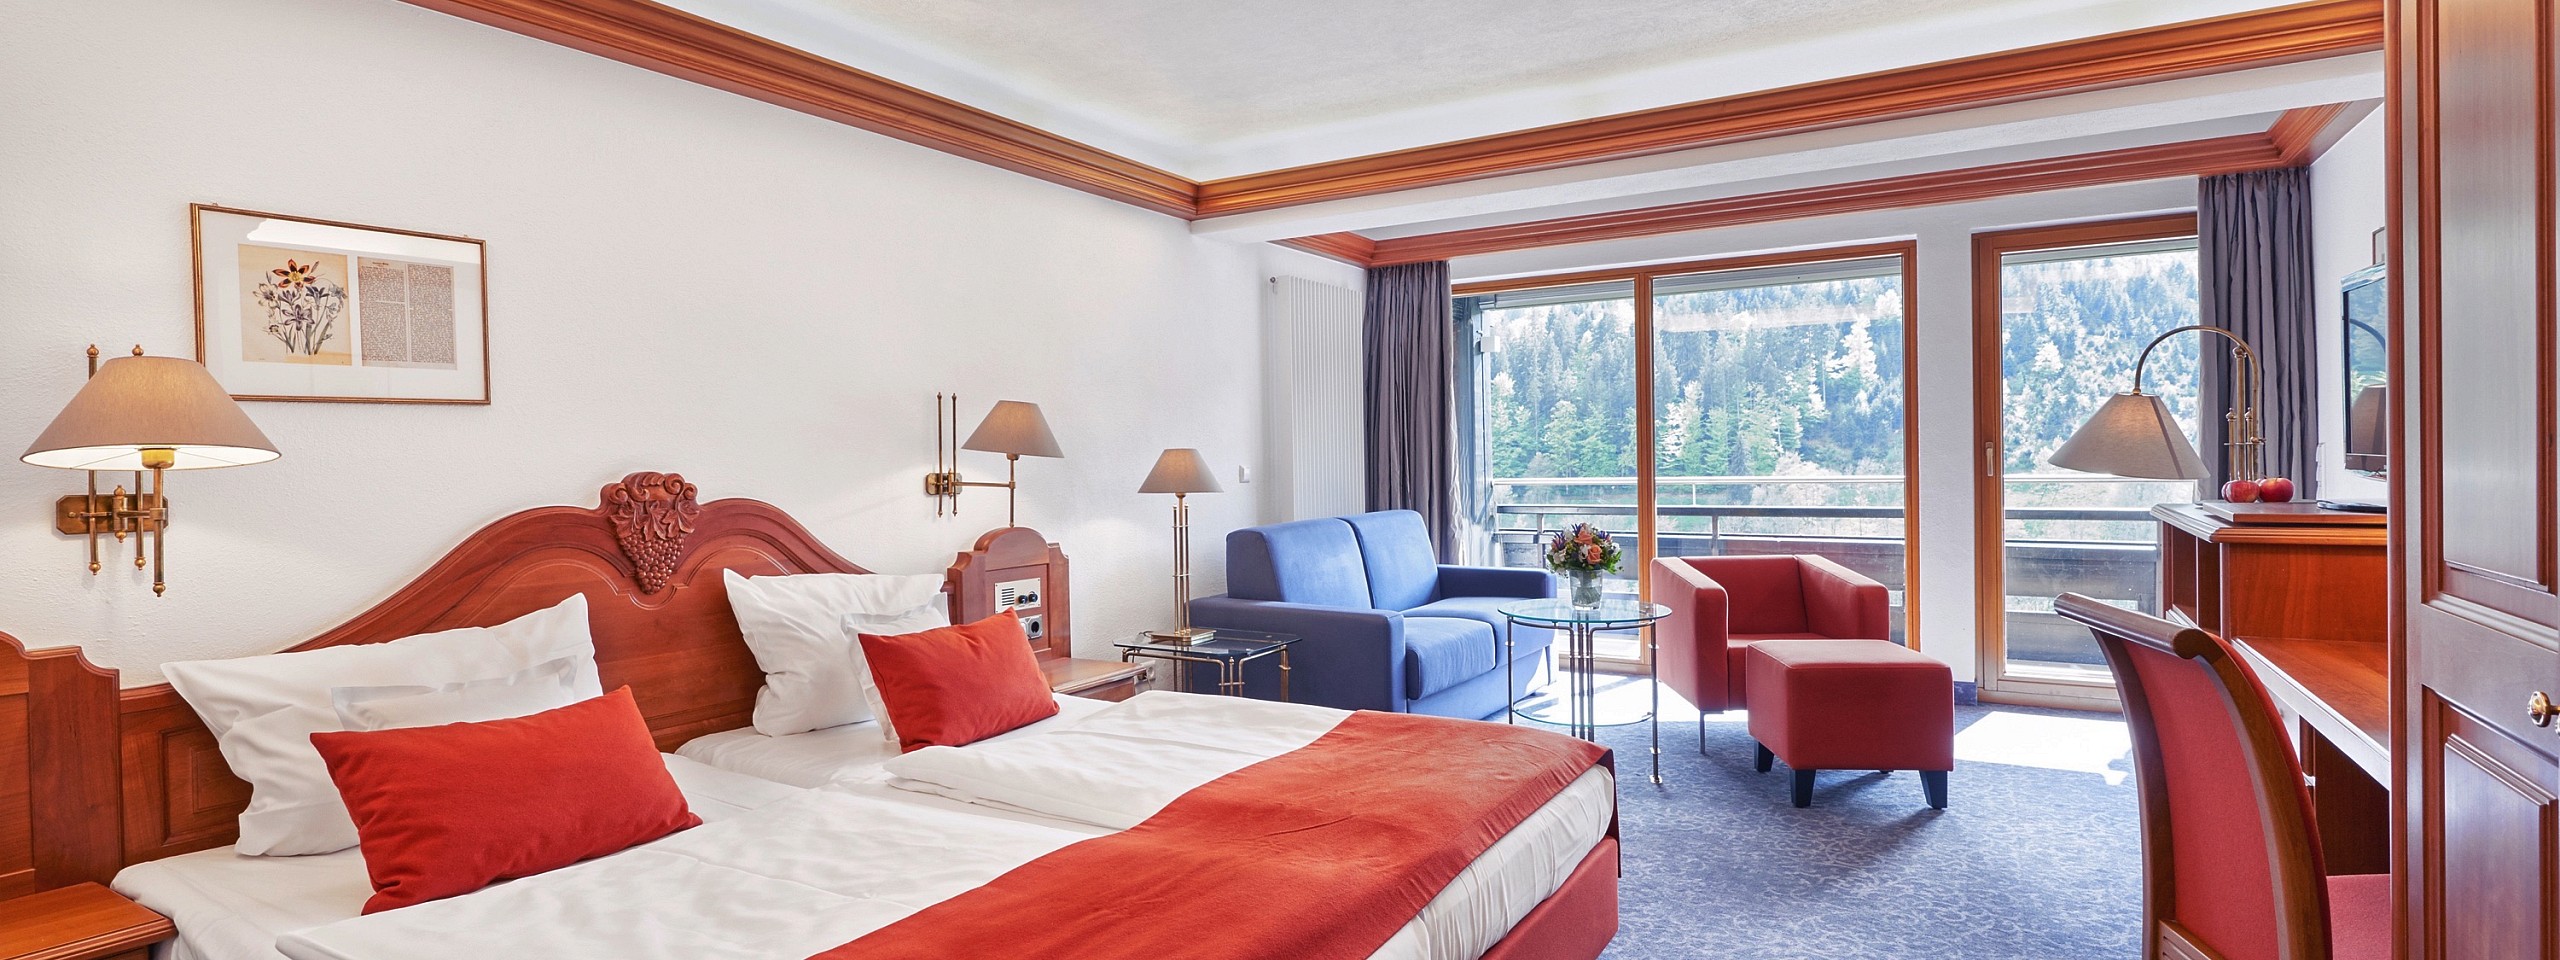 Einladend eingerichtetes Hotelzimmer im Schwarzwald mit Doppelbett und Sitzmöbeln.